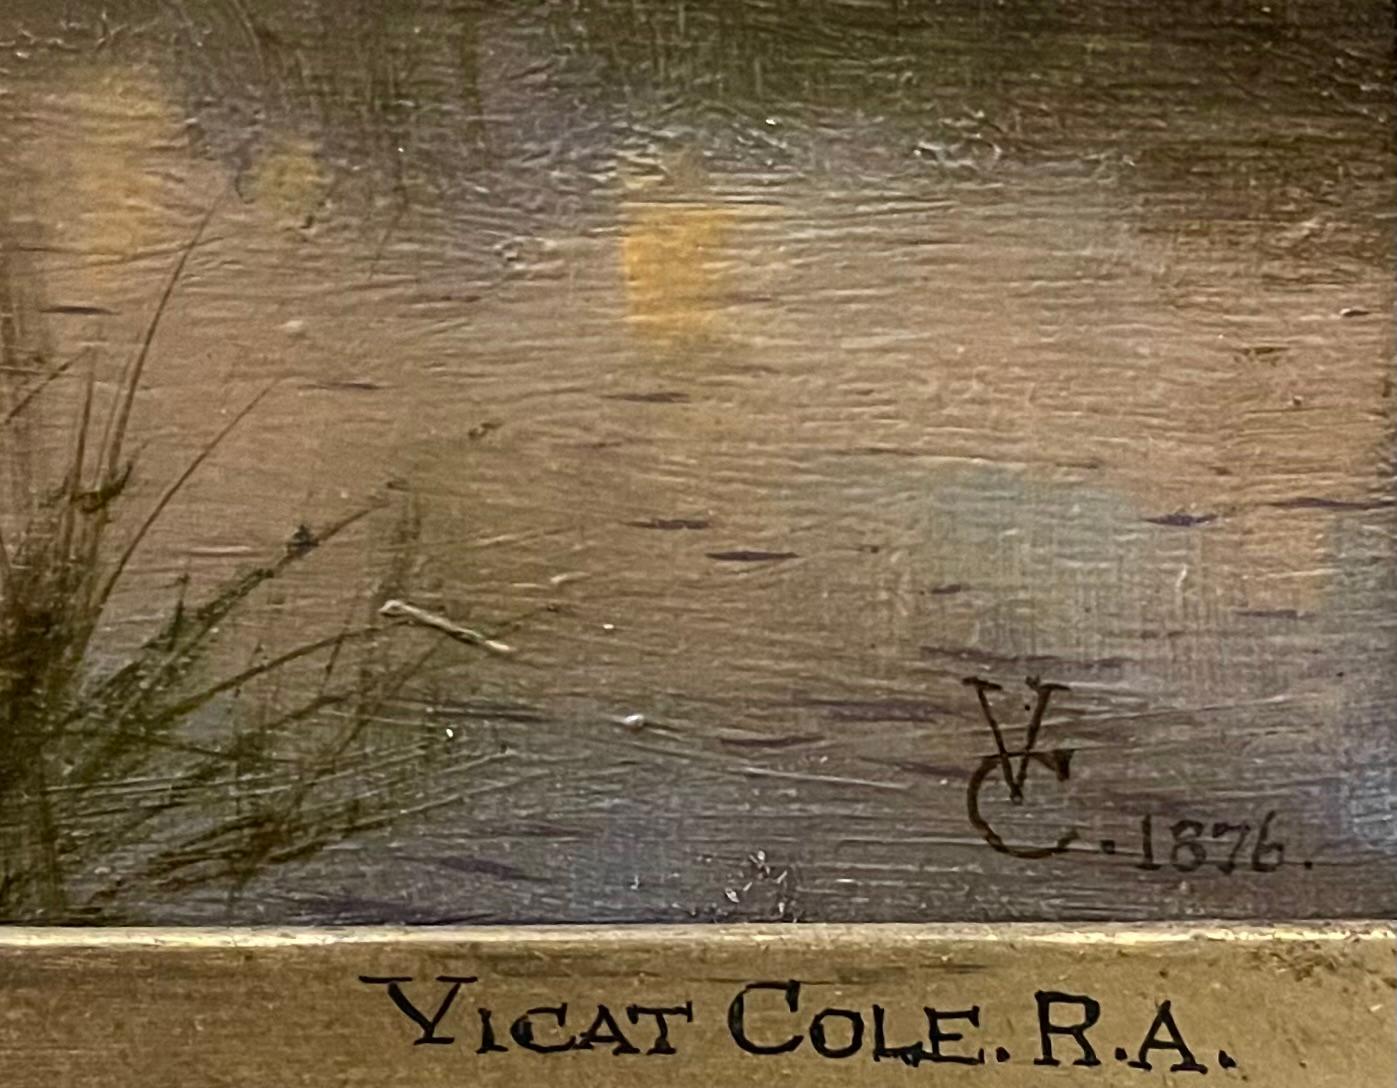 Ravissante peinture de paysage au coucher du soleil intitulée Shere, Surrey par George Vicat Cole, RA (1833-1893). Le tableau s'inscrit dans la tradition du plein art, monogrammé VC en bas à droite et daté de 1876.  

Cole est né à Portsmouth, en